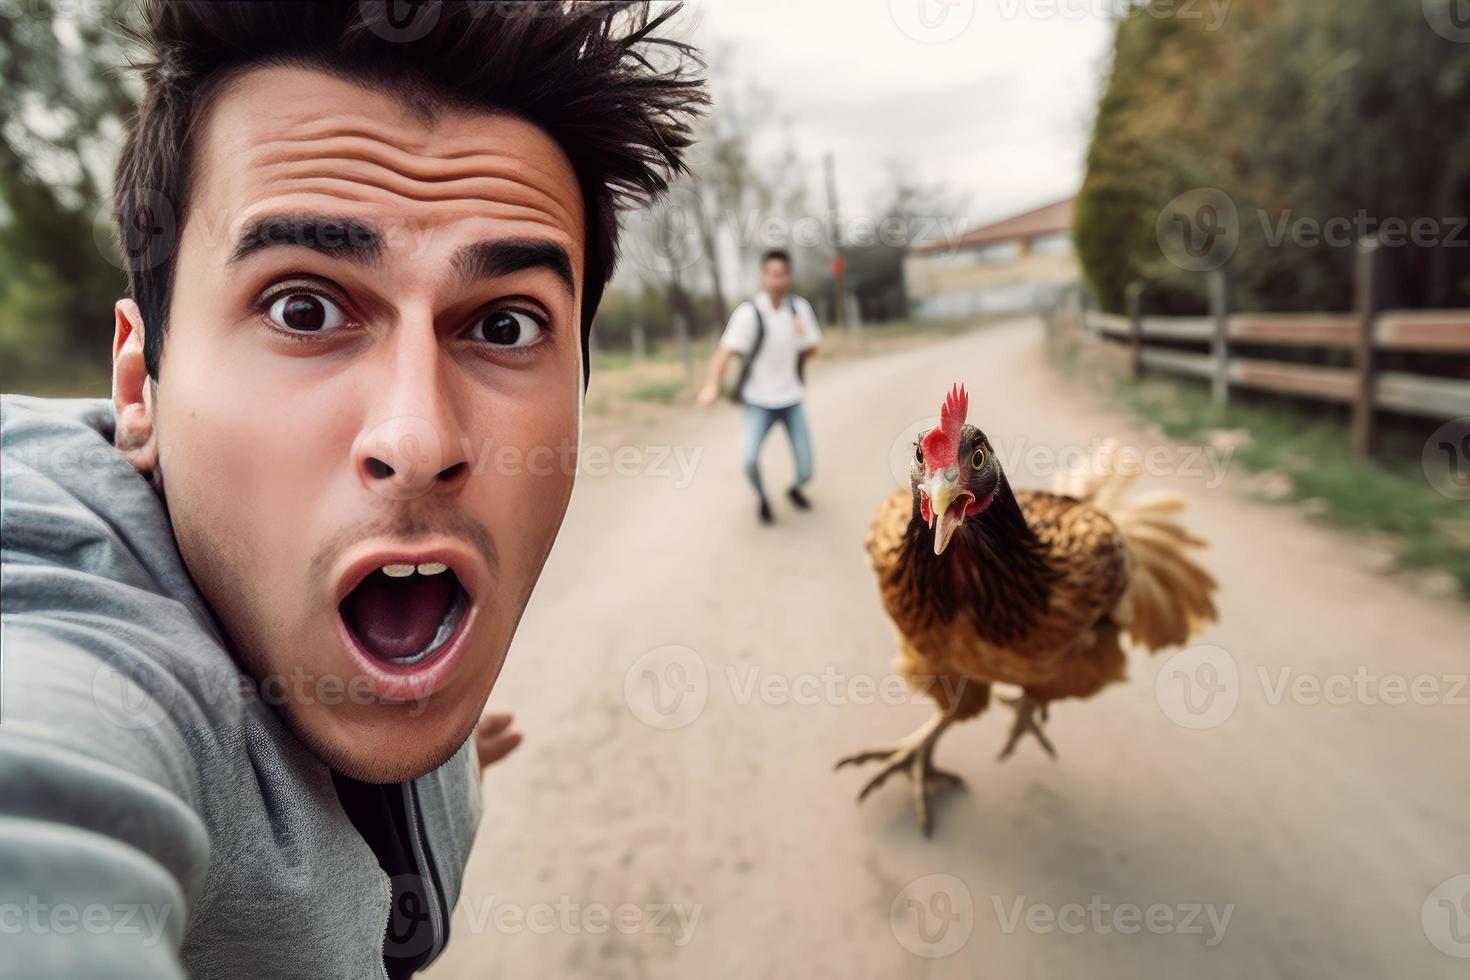 asustado hombre selfie con enojado pollo. generar ai foto